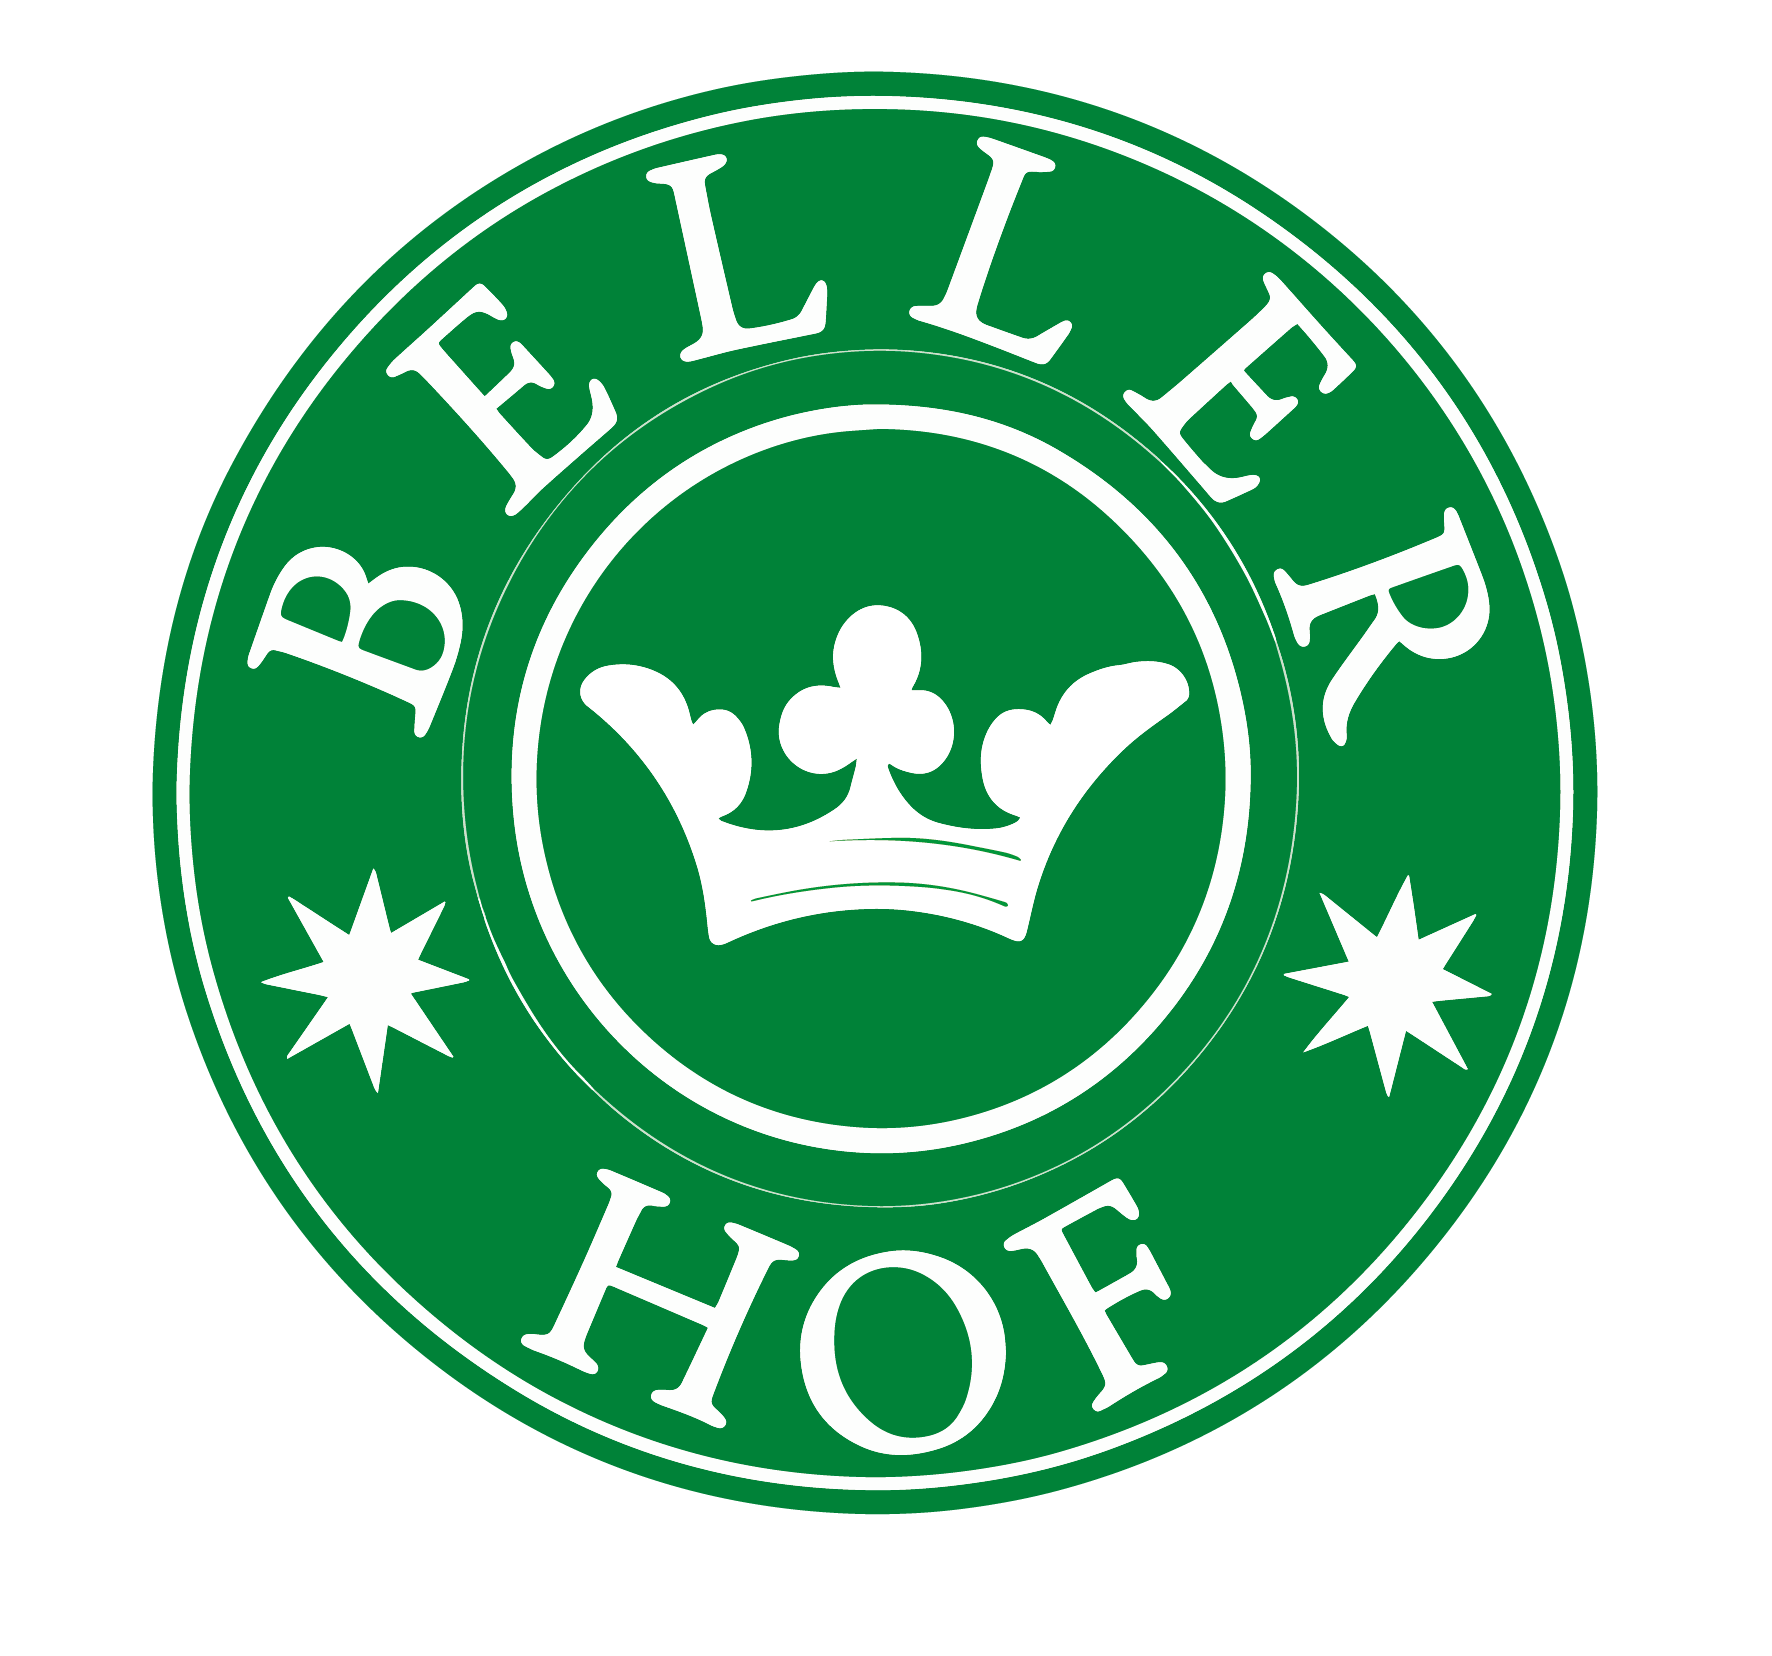 Beller Hof Online Shop>